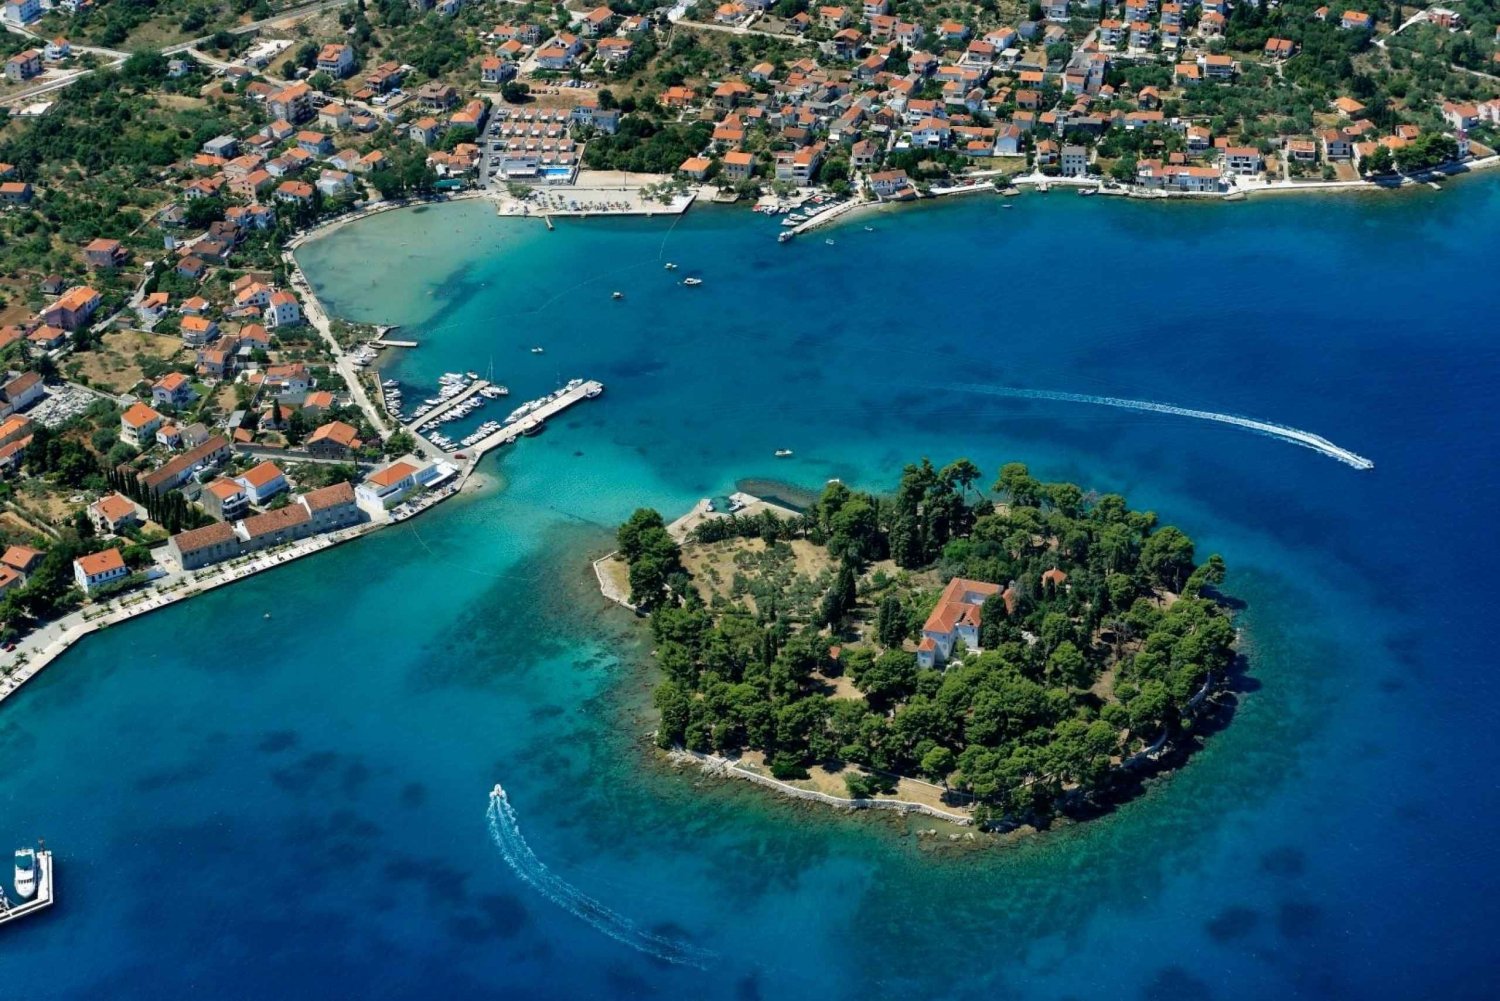 Zadar : Circuit dans les îles avec plongée en apnée et boissons